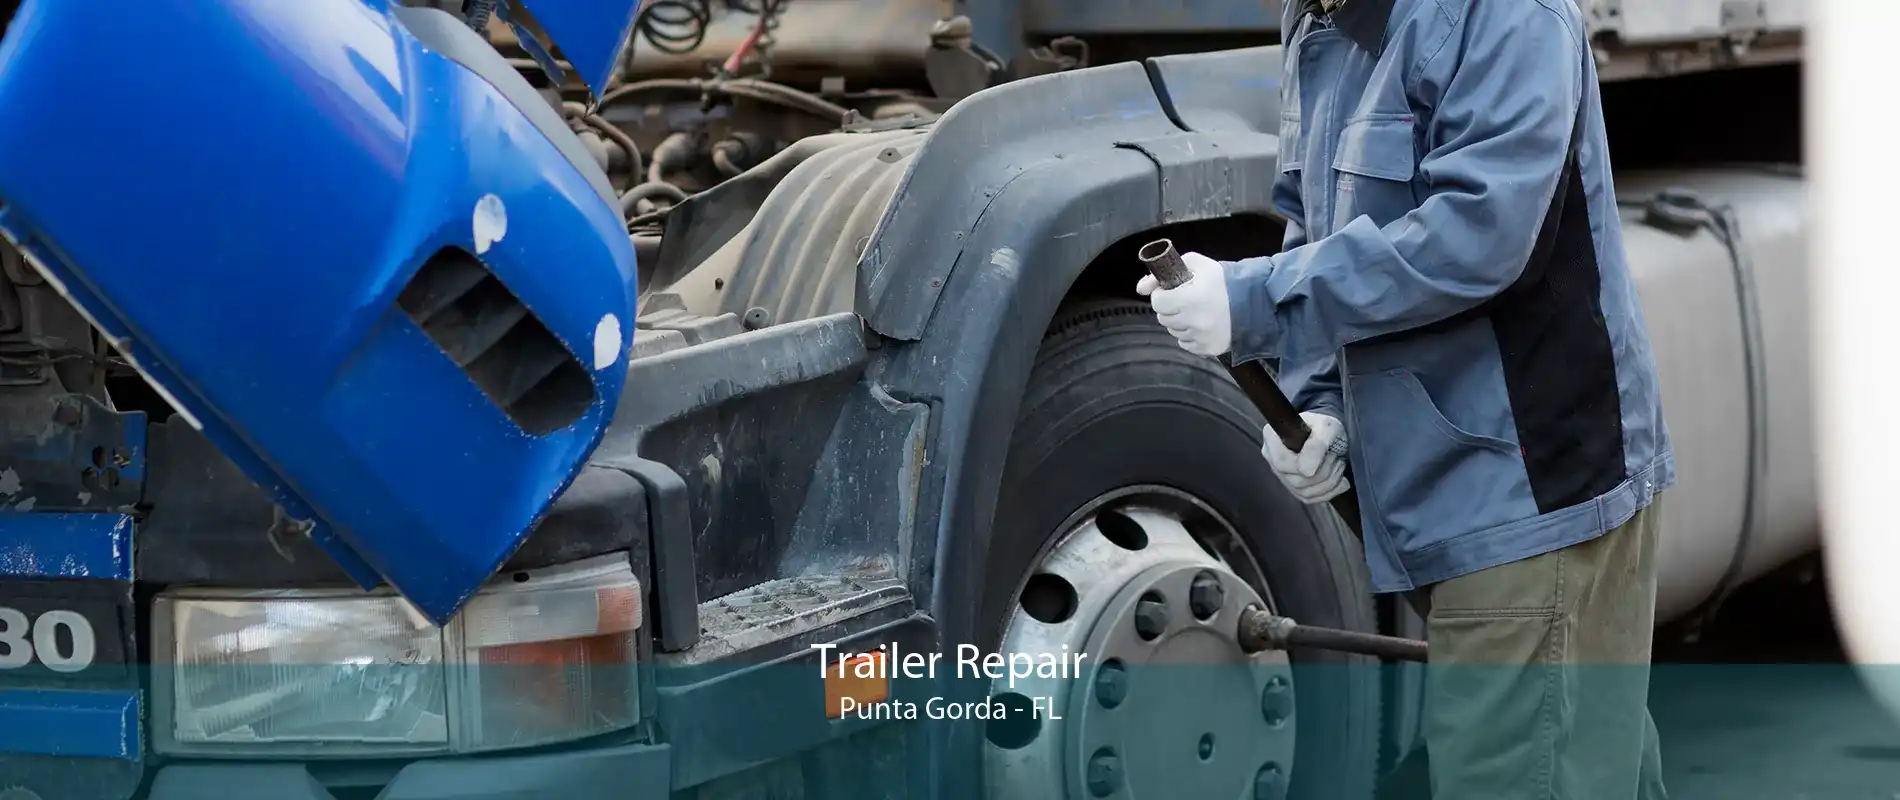 Trailer Repair Punta Gorda - FL